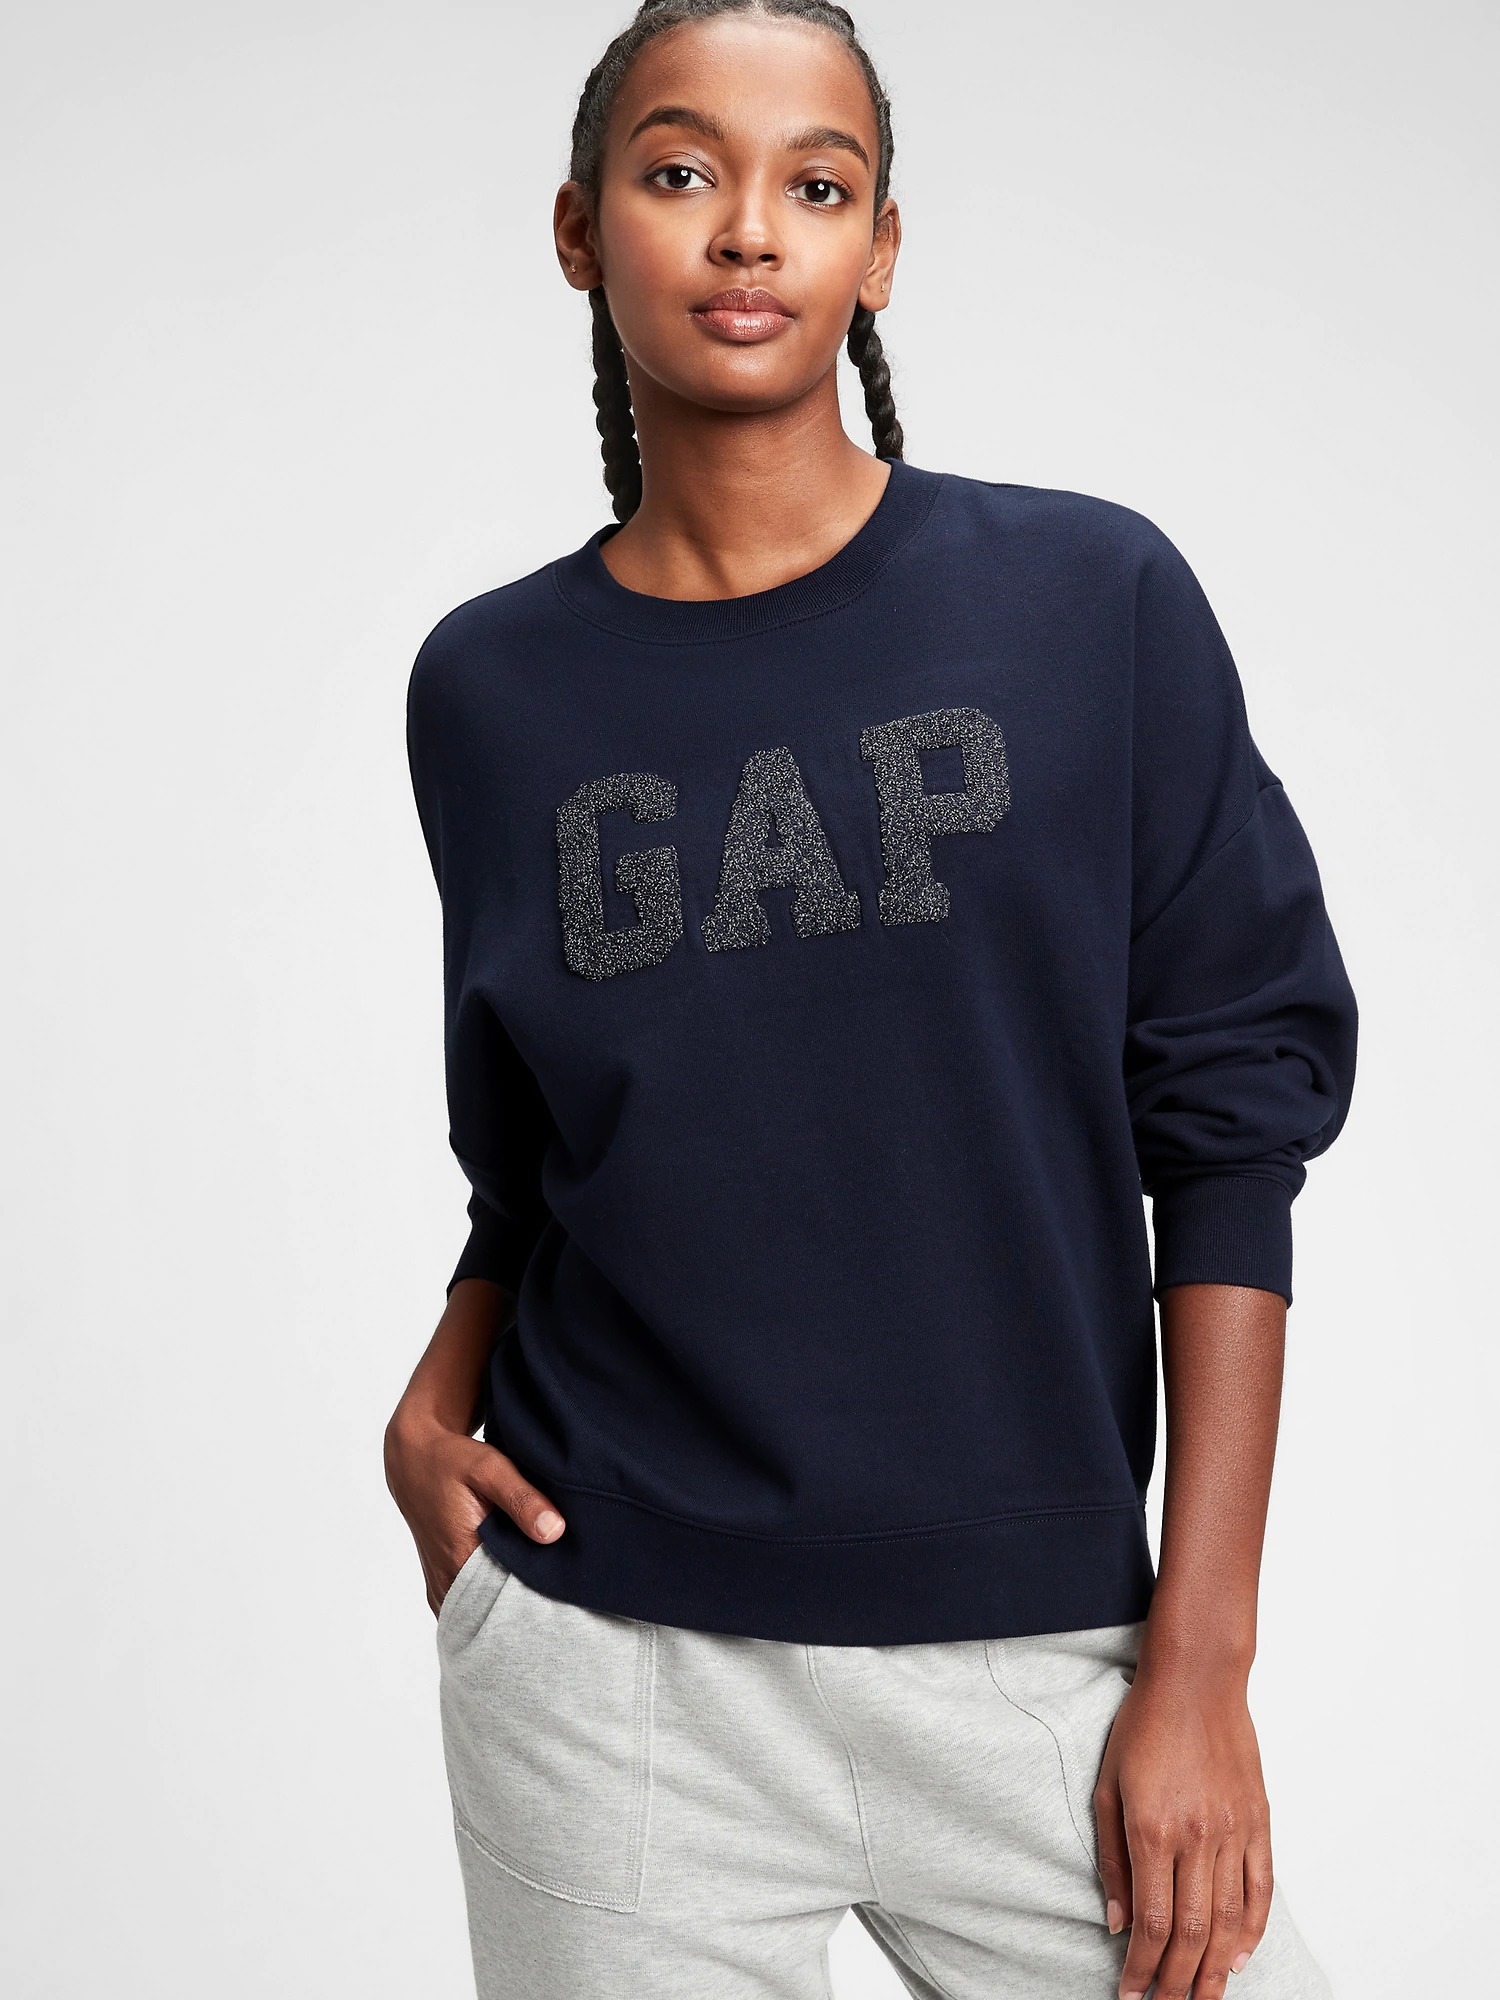 Gap Logo Yuvarlak Yaka Sweatshirt. 1